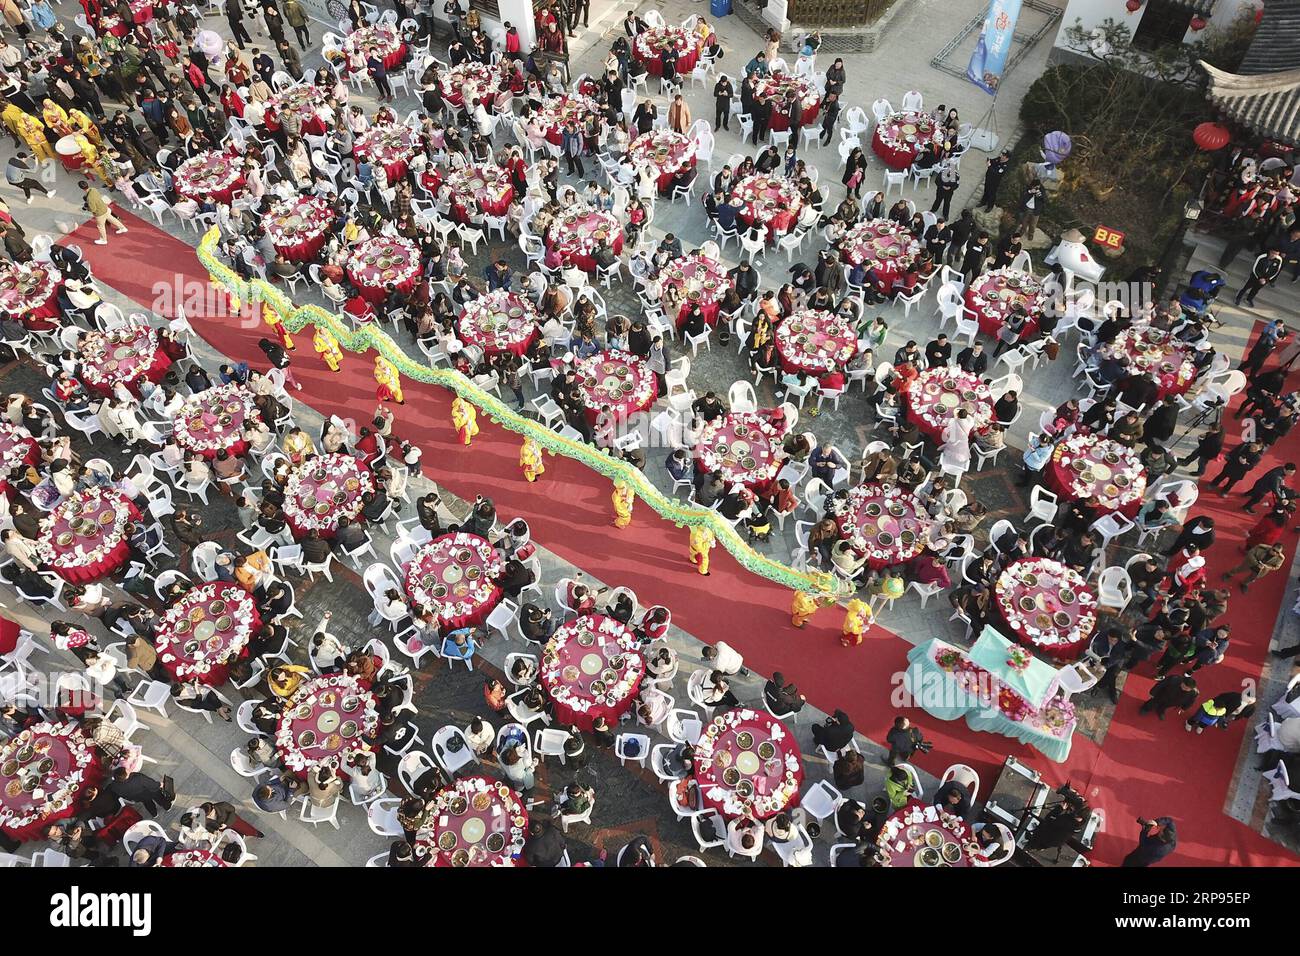 (190325) -- PECHINO, 25 marzo 2019 (Xinhua) -- foto aerea scattata il 23 marzo 2019 mostra persone che si riuniscono per gustare i piatti fatti di Luosi, una specie di lumaca di fiume, durante una festa tenutasi nella città di Jiangba, nel distretto di Hongze della città di Huai An, nella provincia orientale di Jiangsu della Cina. I piatti di Luosi sono solitamente venduti nelle bancarelle di strada in Cina. (Xinhua/Wan Zhen) XINHUA PHOTOS OF THE DAY PUBLICATIONxNOTxINxCHN Foto Stock